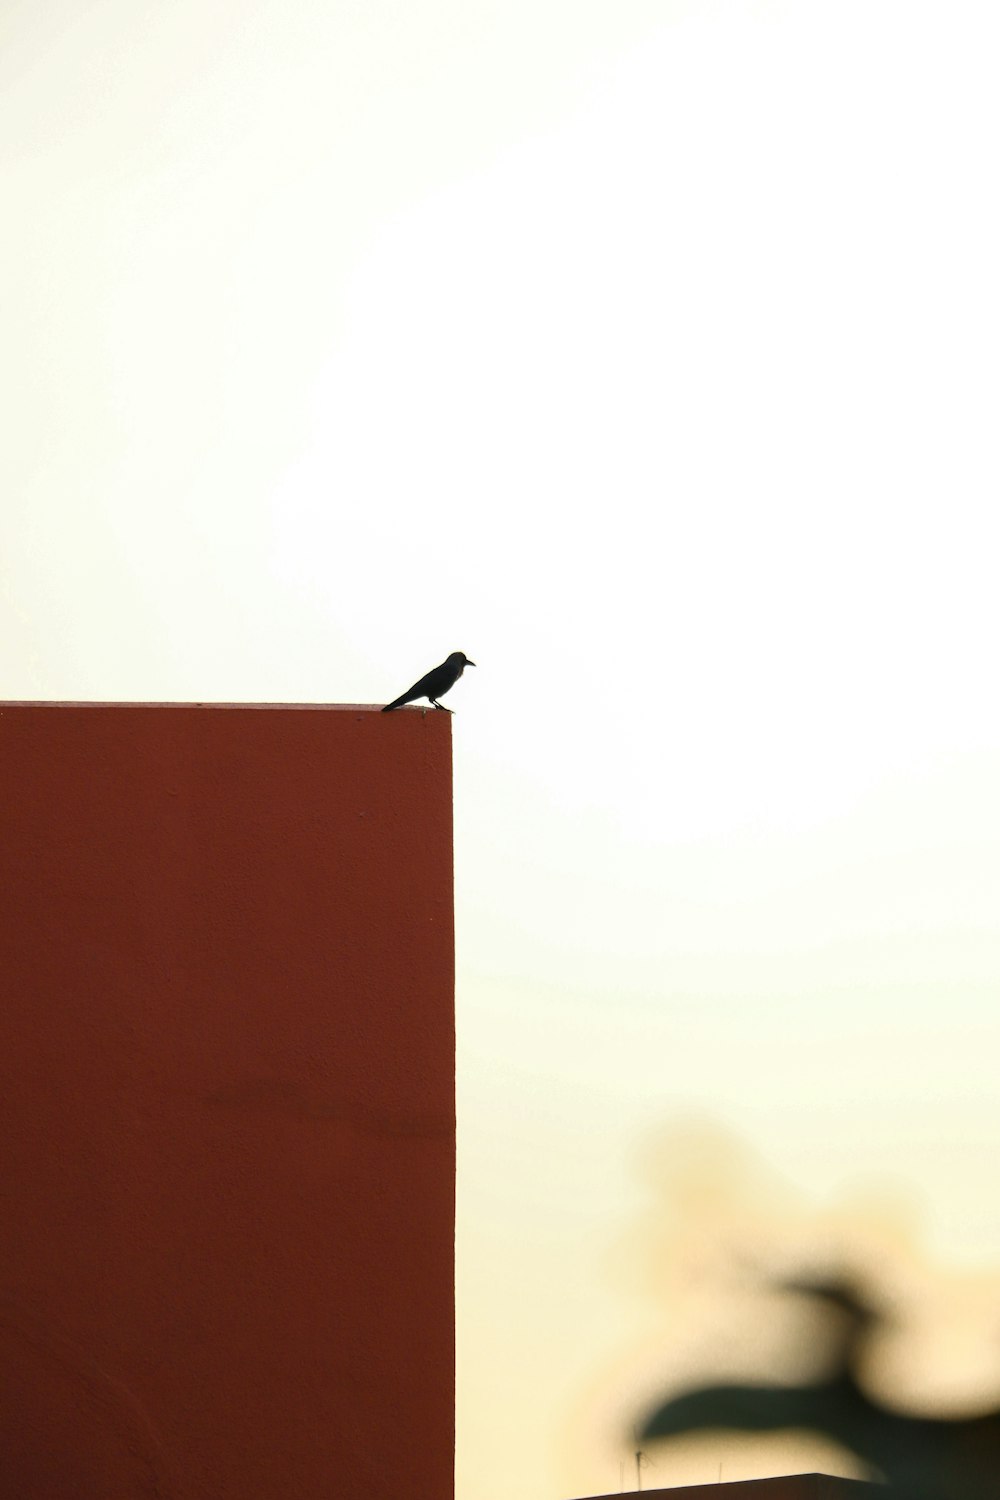 un petit oiseau assis sur le dessus d’une boîte rouge